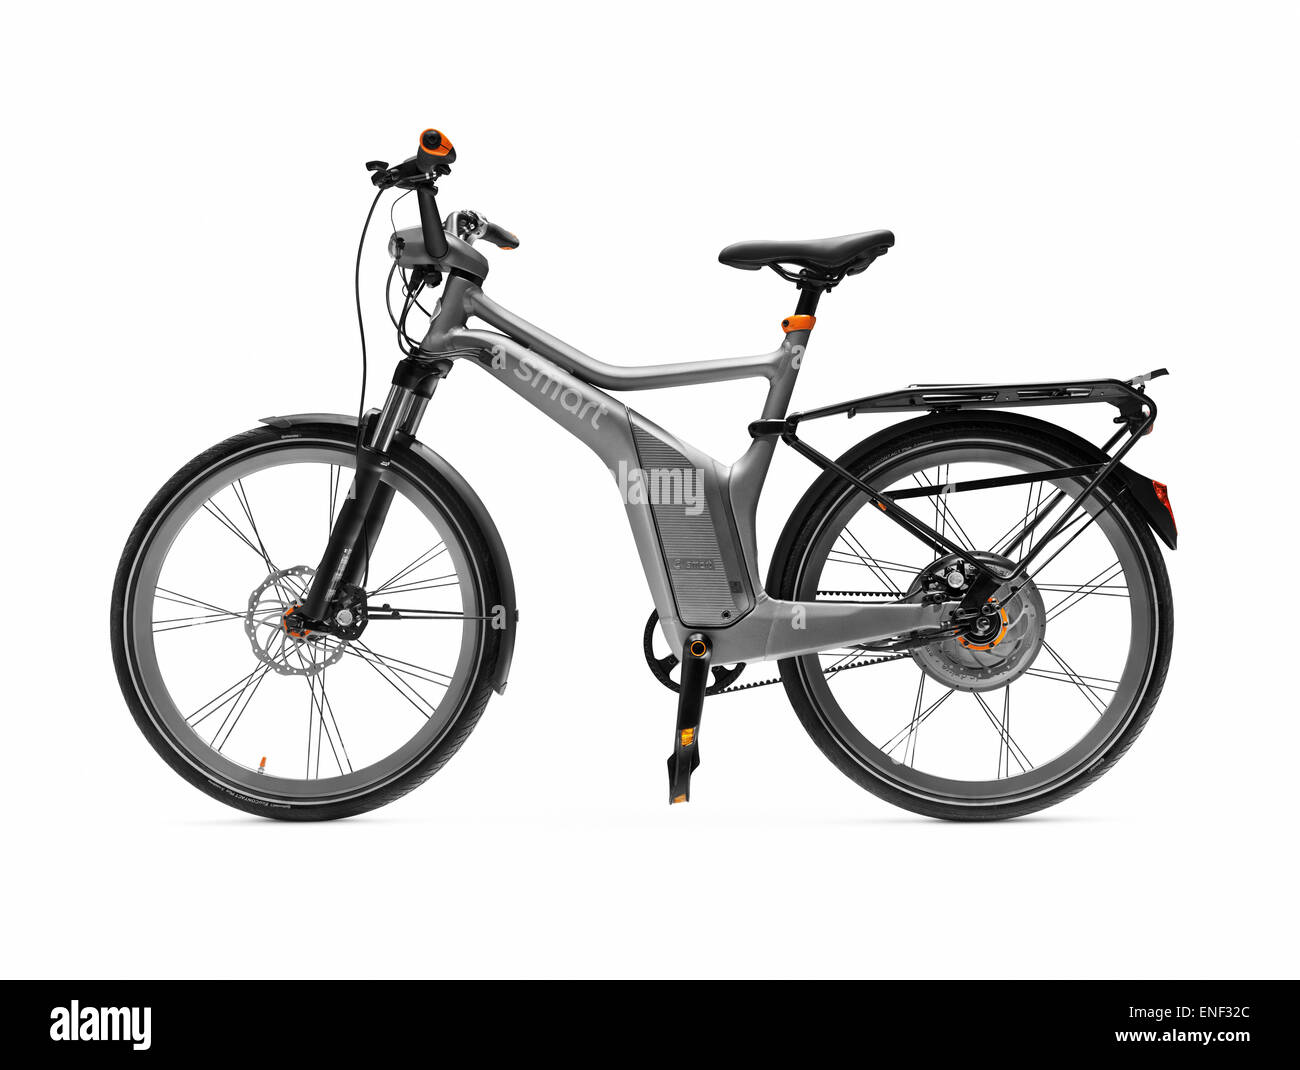 Bici elettrica Immagini senza sfondo e Foto Stock ritagliate - Alamy